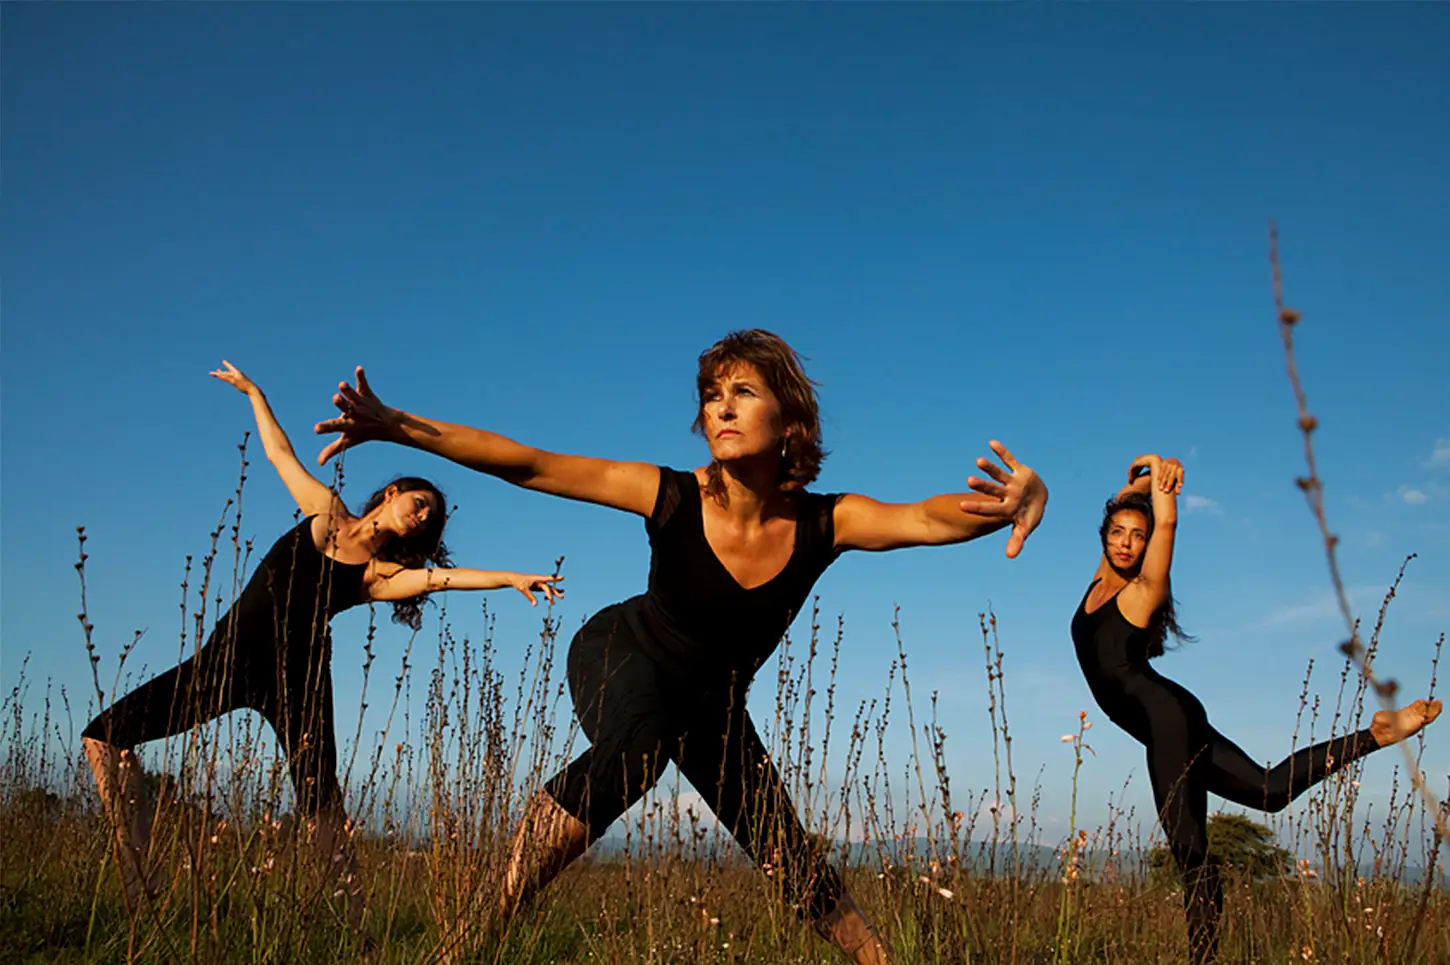 Doris van Bebber, Tänzerin, Choreographin und GYROTONIC®-Trainerin, Freiburg im Breisgau. Das Bild zeigt einen Moment einer Tanzperformance in Mexiko.